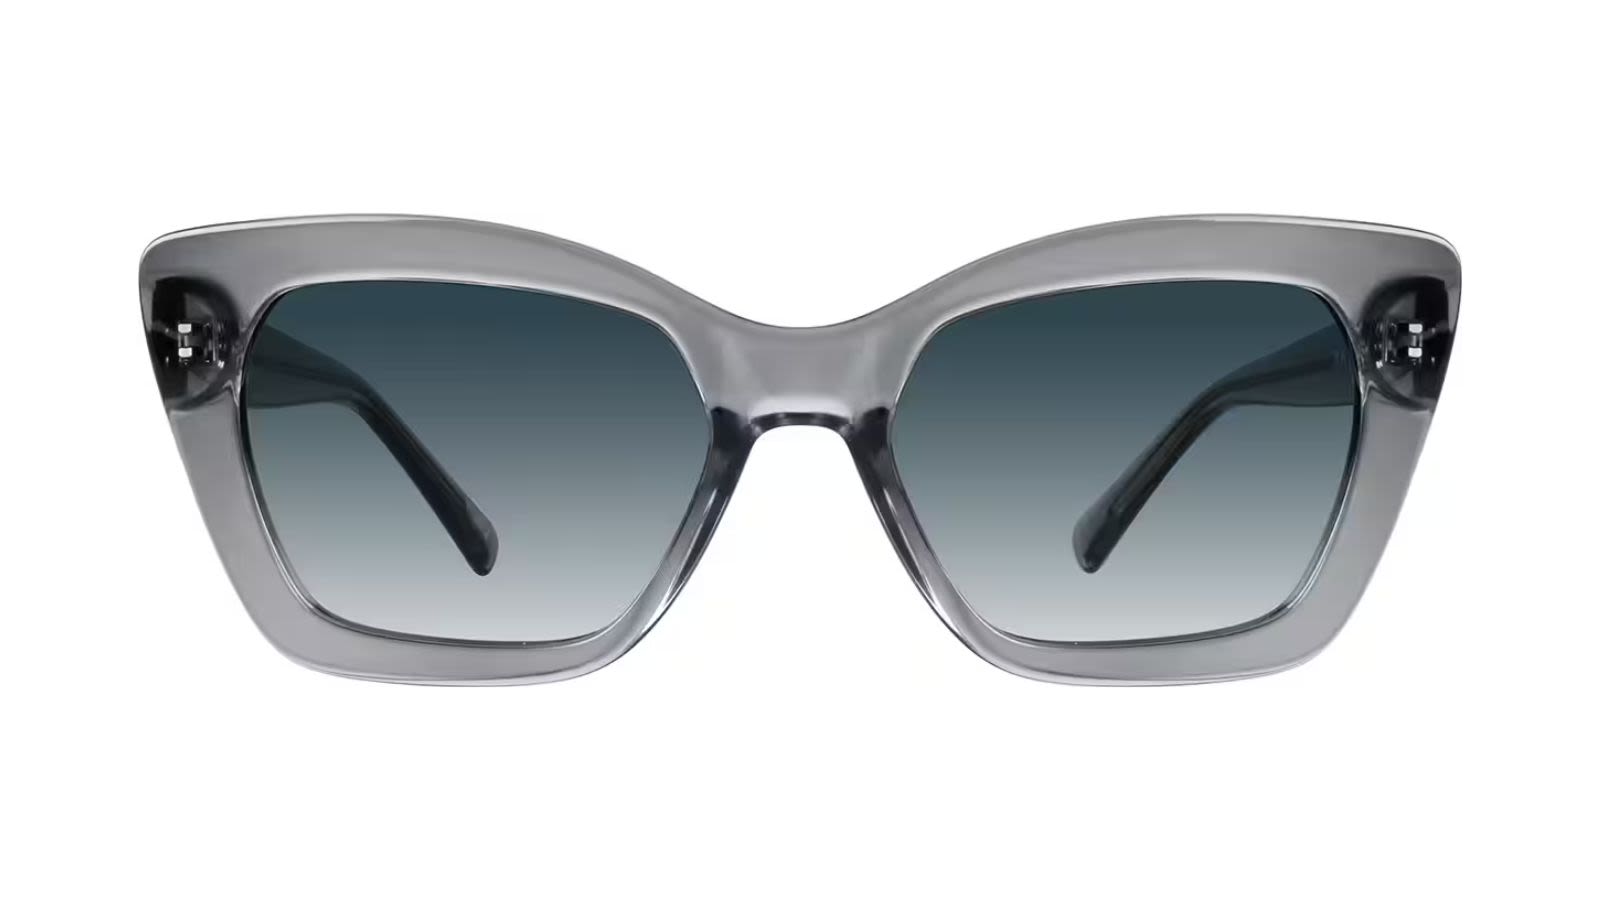 https://media.cnn.com/api/v1/images/stellar/prod/5-smoke-premium-rectangle-sunglasses.jpg?c=original